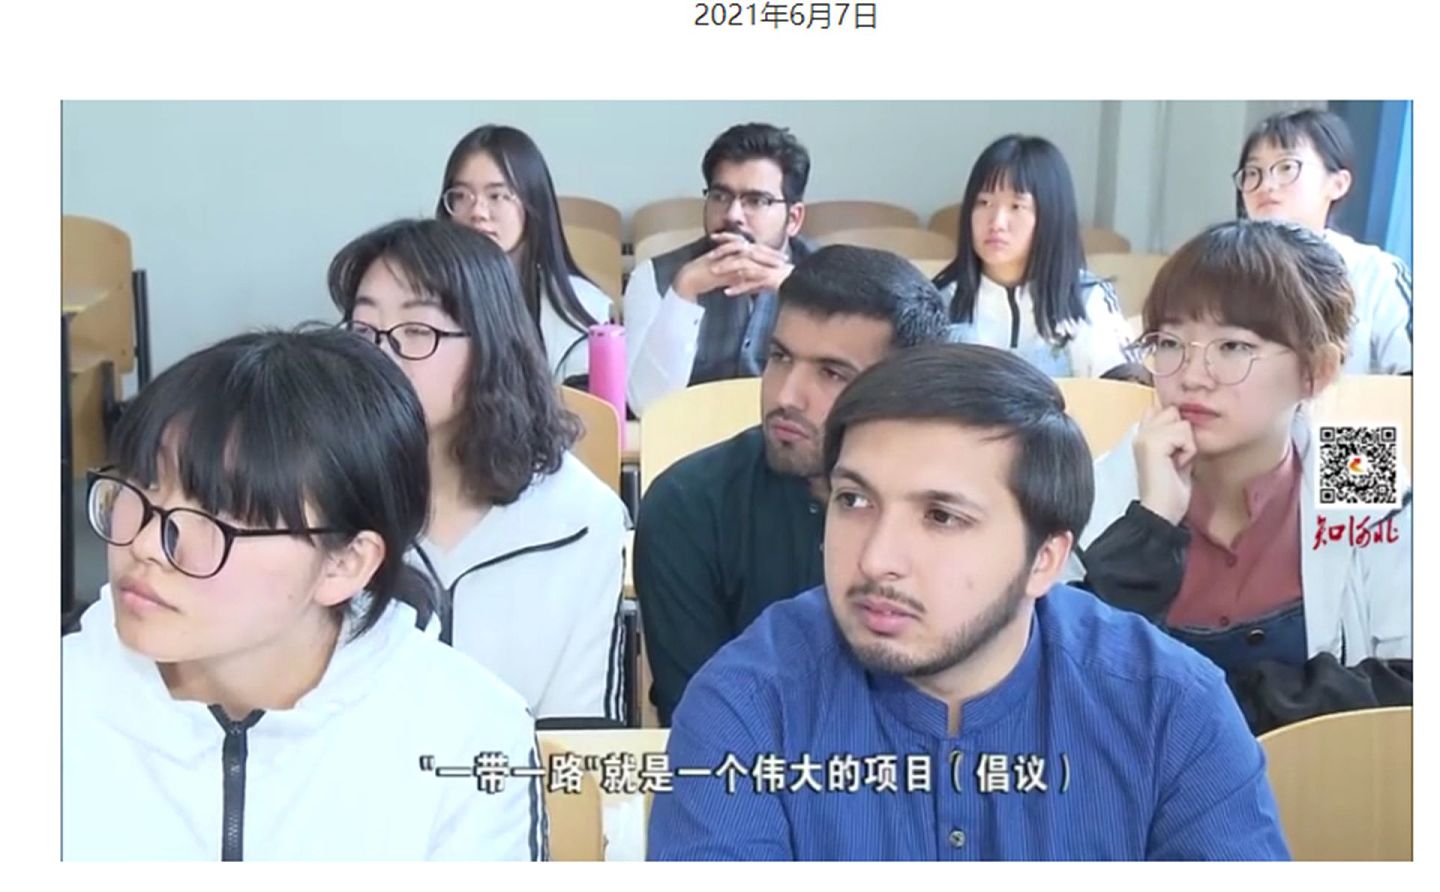 画面中，老师正在讲课。（河北师范大学国际文化交流学院官网）